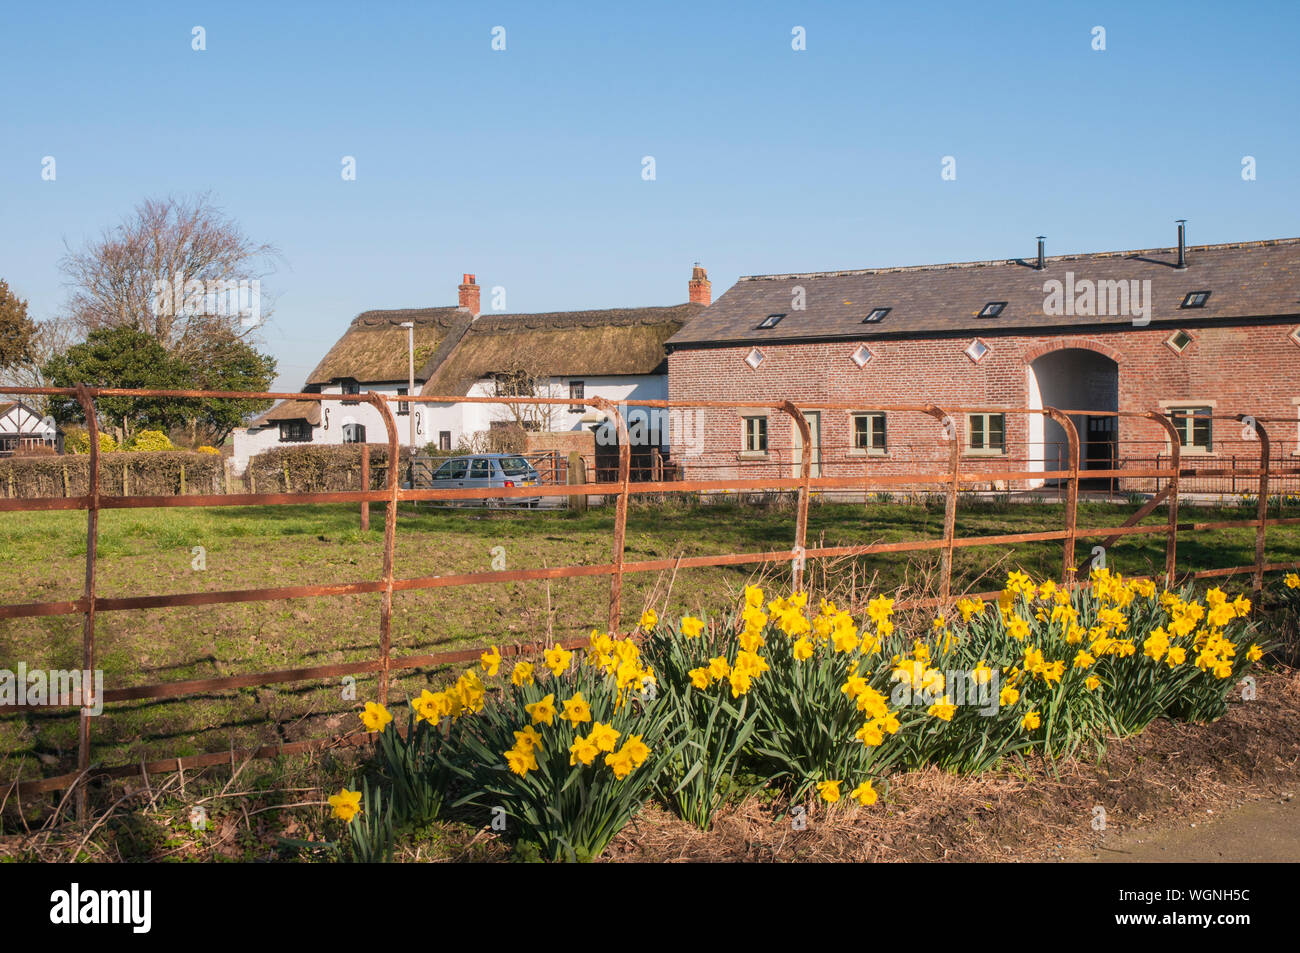 Narciso narcisos narcisos creciendo en el lado de un carril de campo con una casa de campo y edificios en el fondo contra un cielo azul Foto de stock